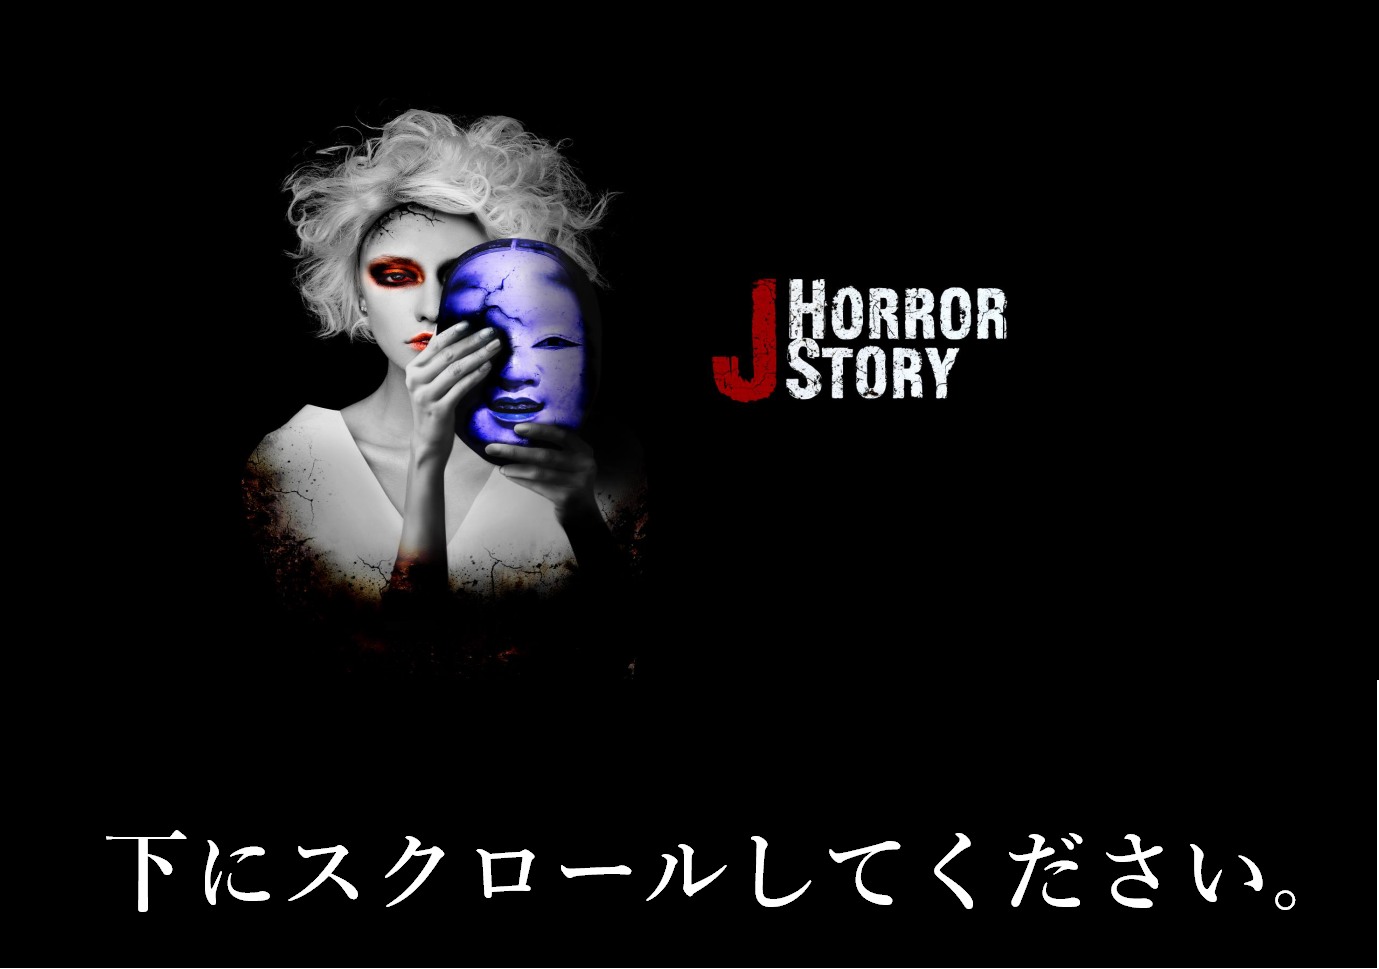 J Horror Story